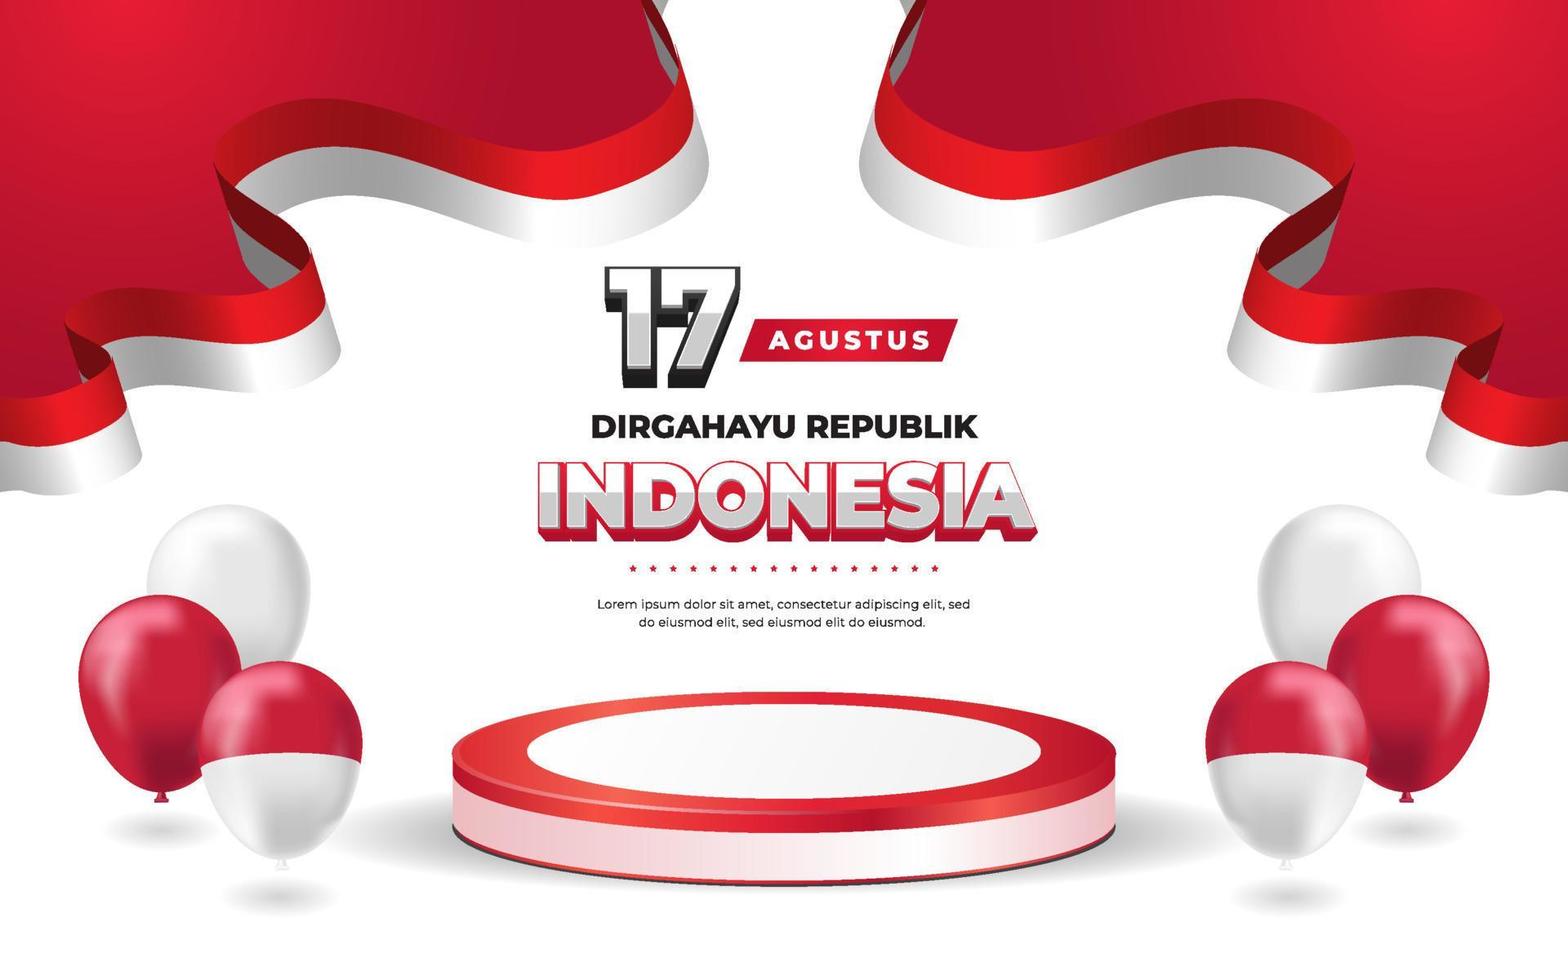 17 de agosto banner de cartão de saudação do dia da independência da indonésia vetor